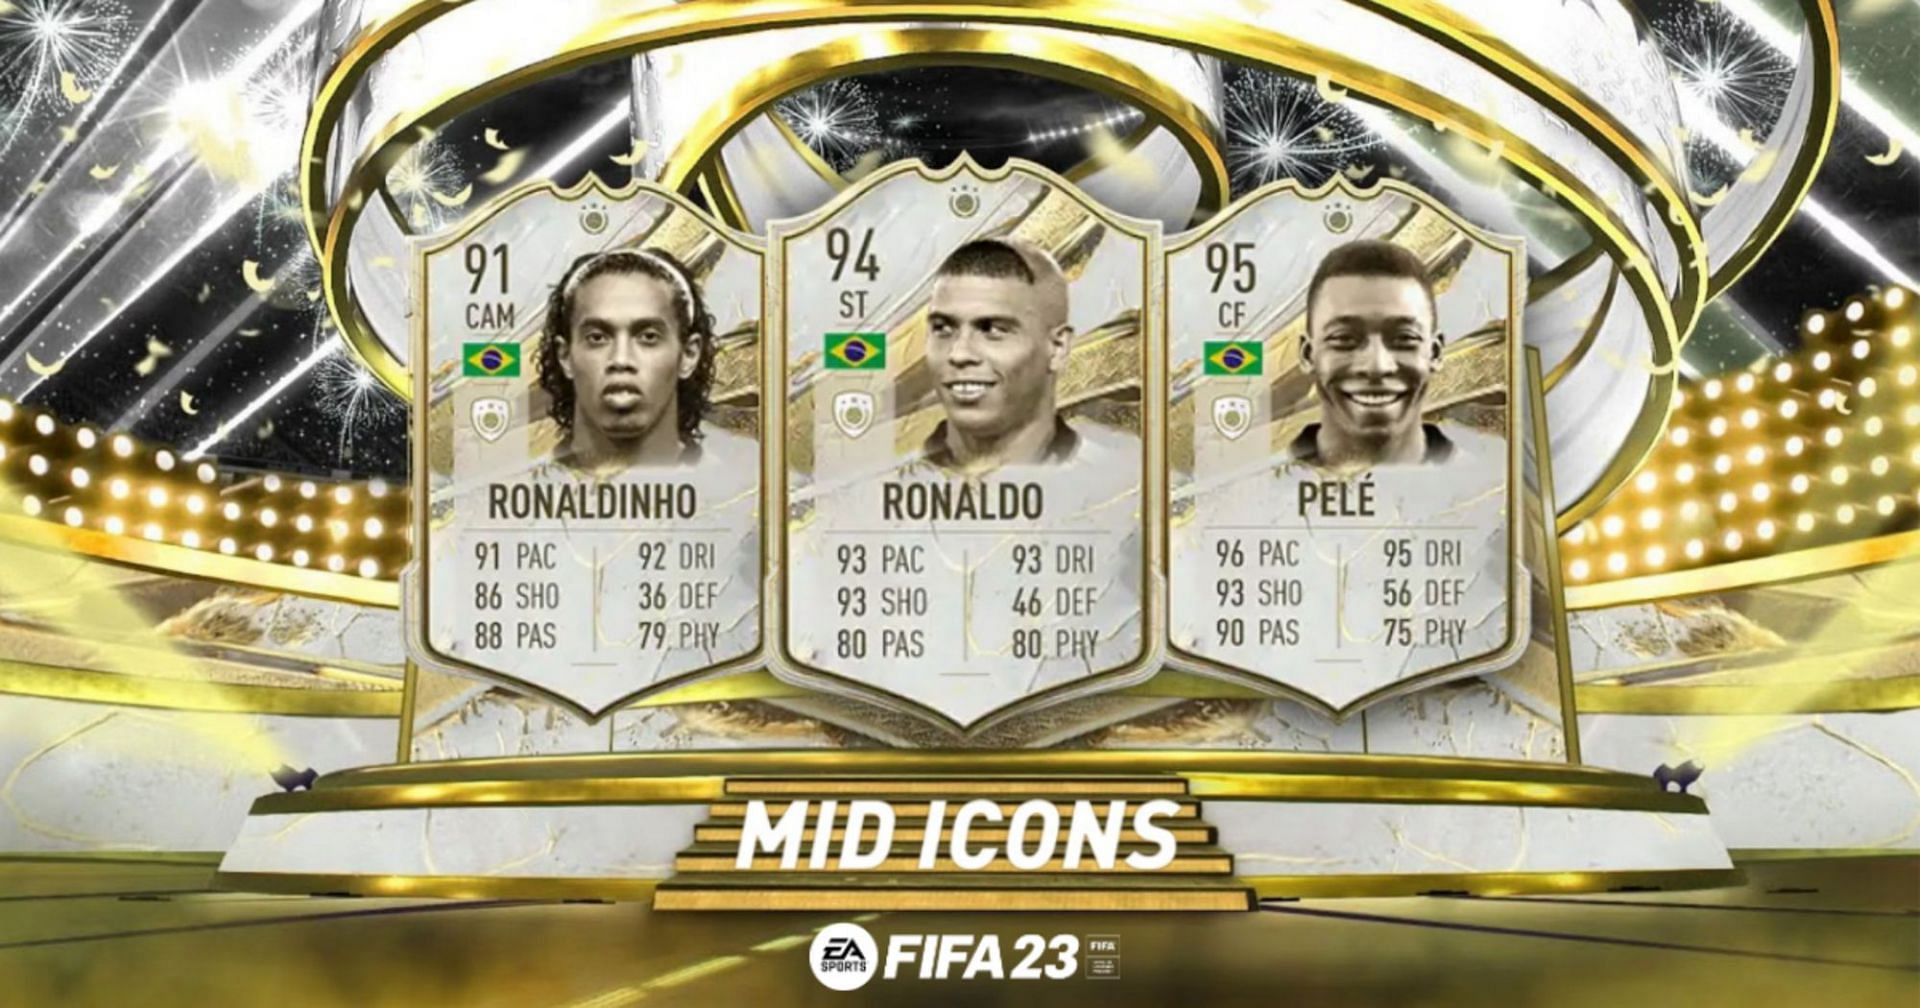 FIFA 18 updates: Ronaldinho, FUT ICONS and more